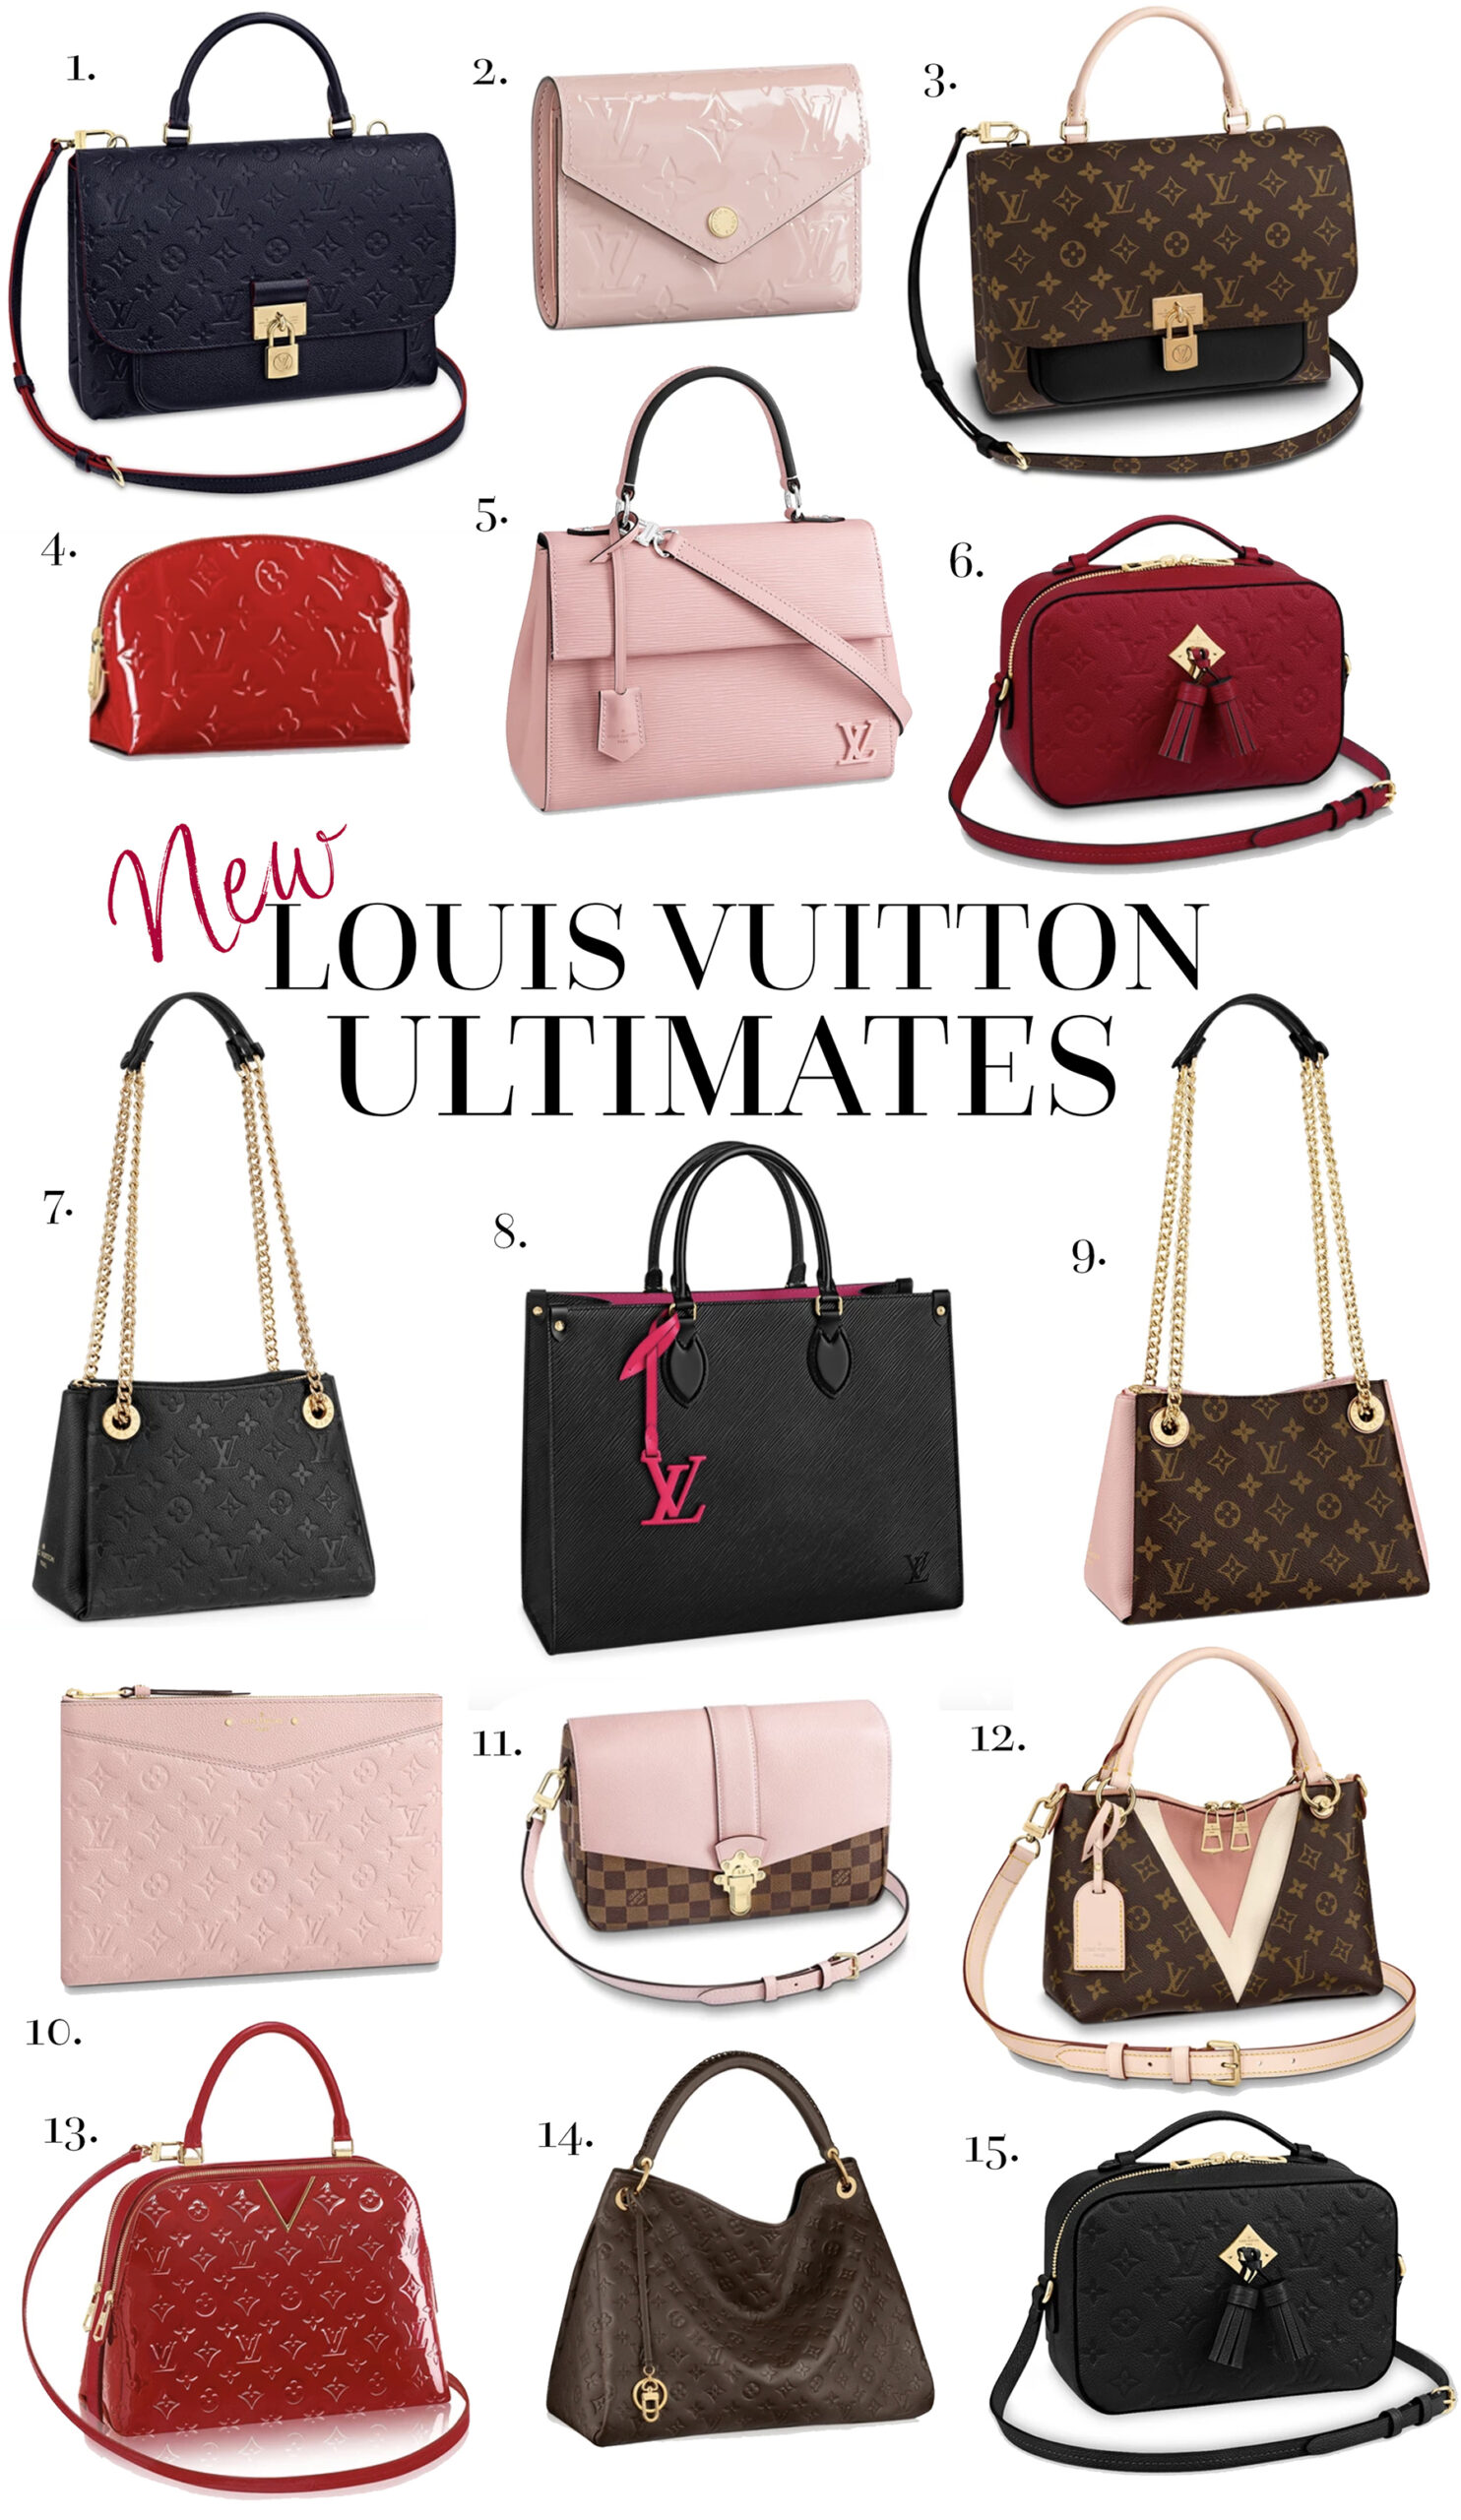 Louis Vuitton Haul & Pochette Metis Unboxing! - Chase Amie